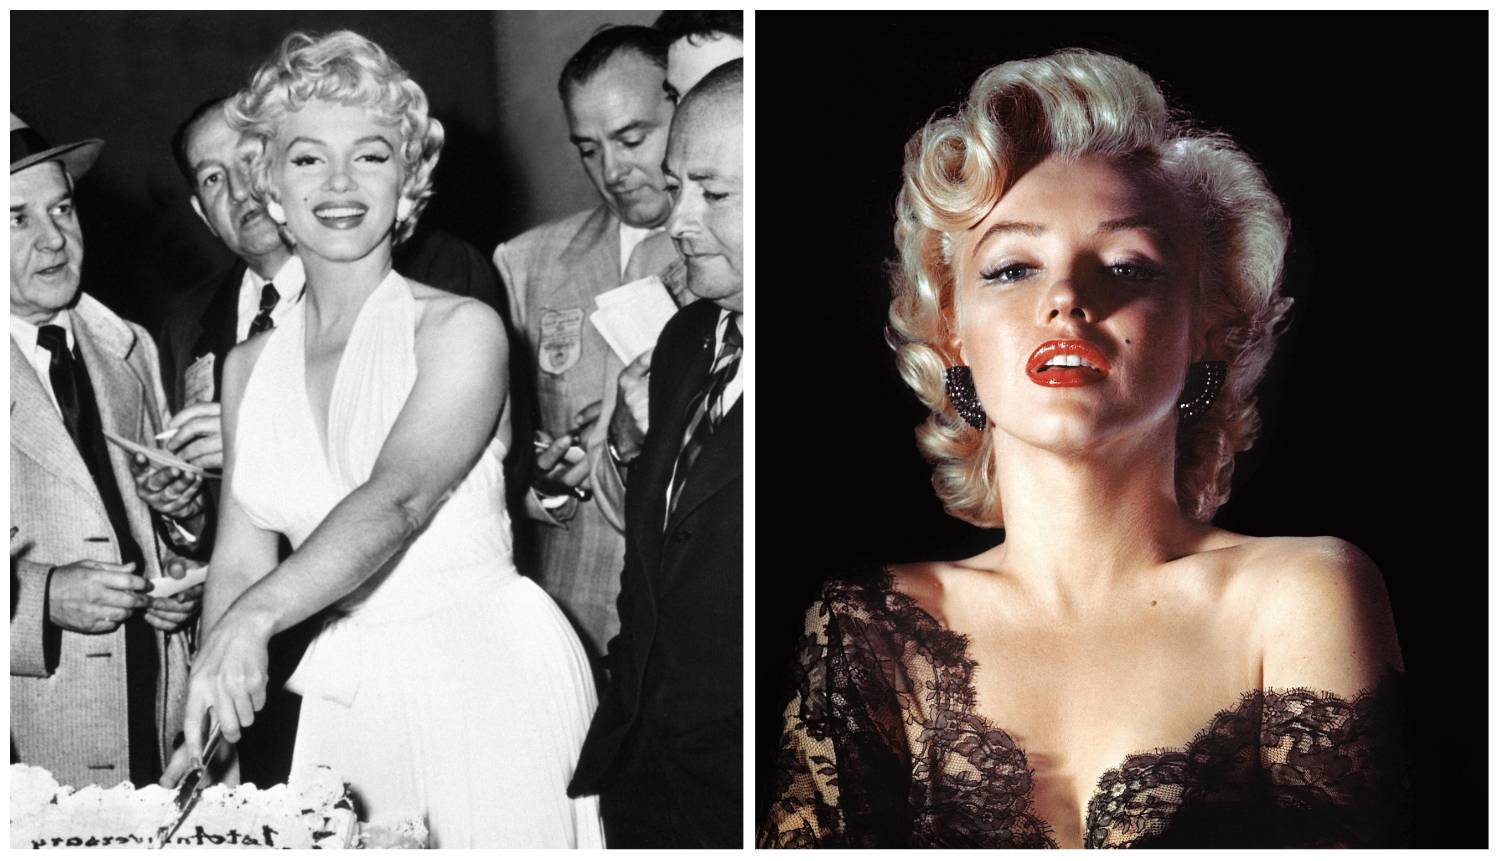 Marilyn je cijeli život tragala za iskrenom ljubavi, a zauzvrat je bila zlostavljana i neshvaćena